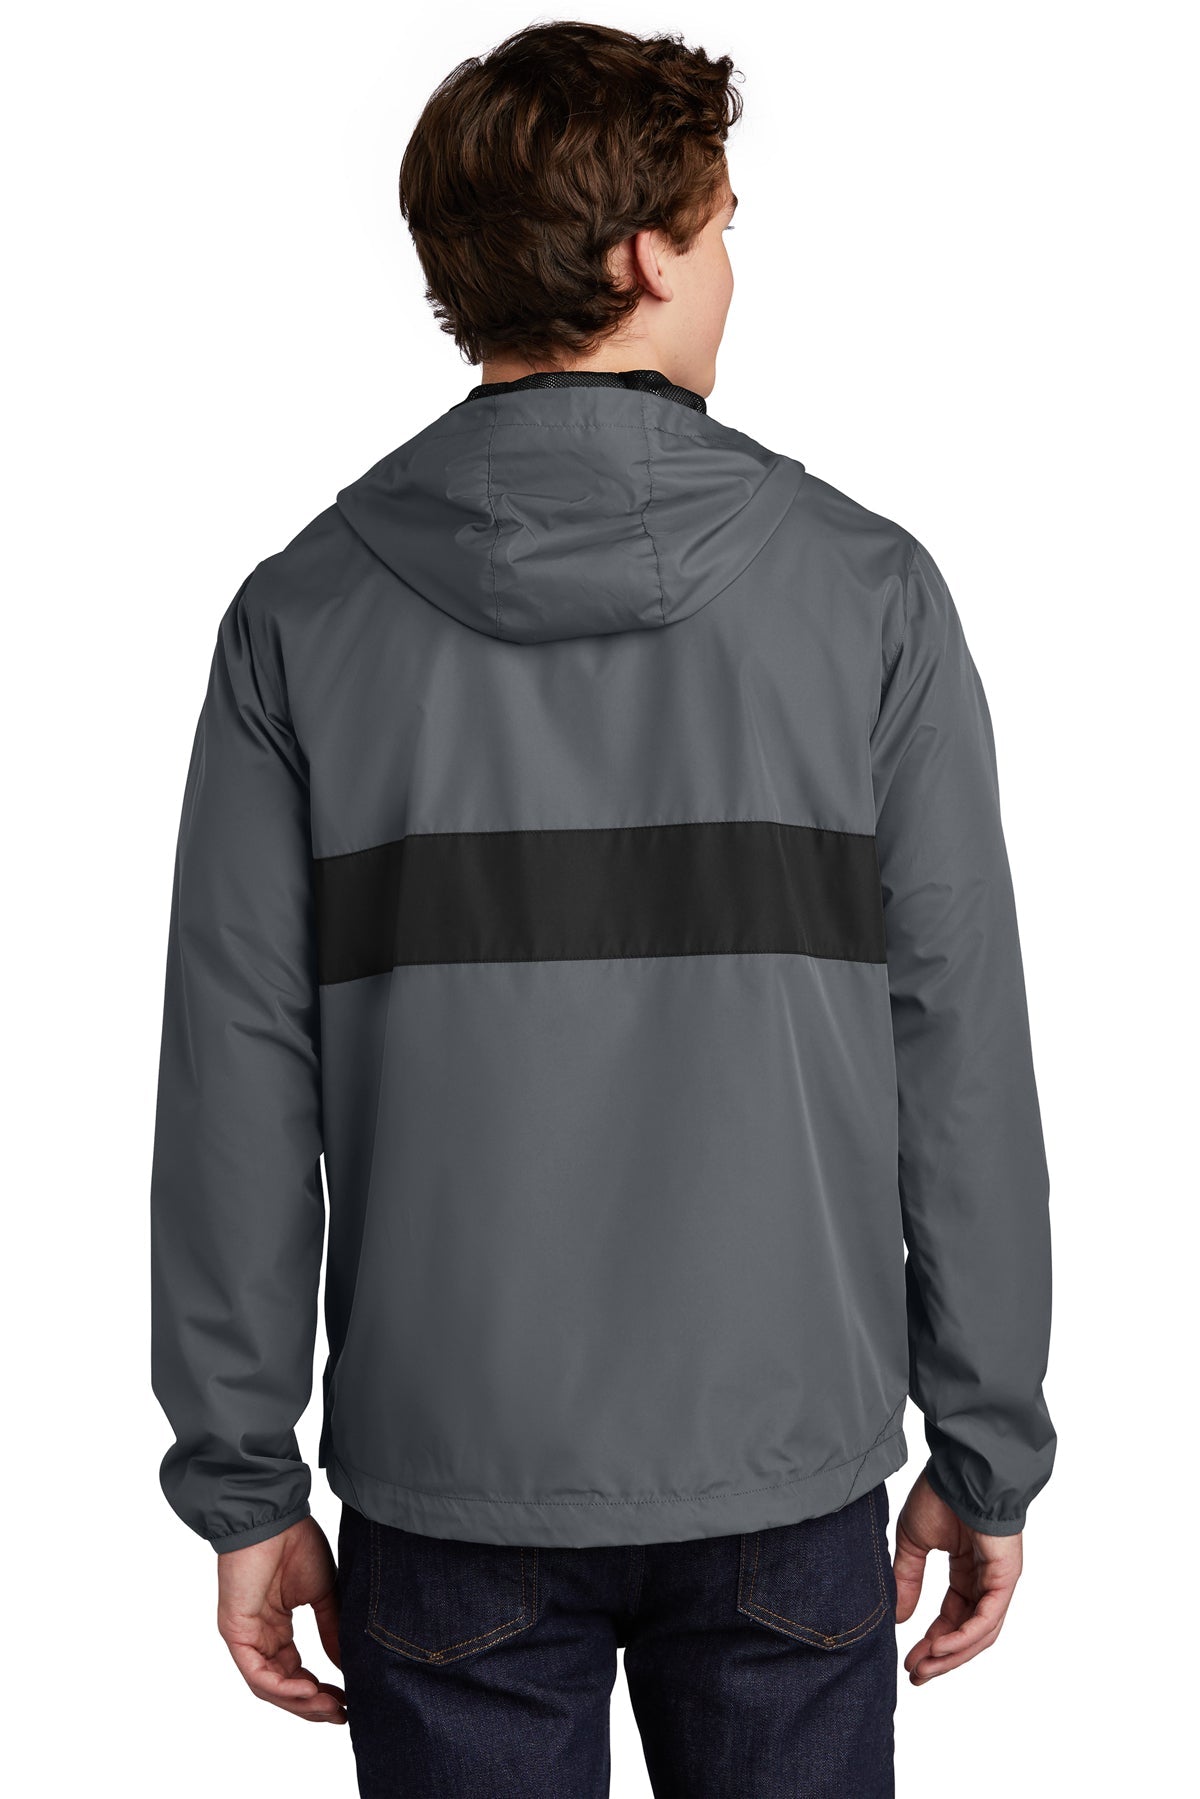 sport-tek_jst65 _graphite grey/ black_company_logo_jackets